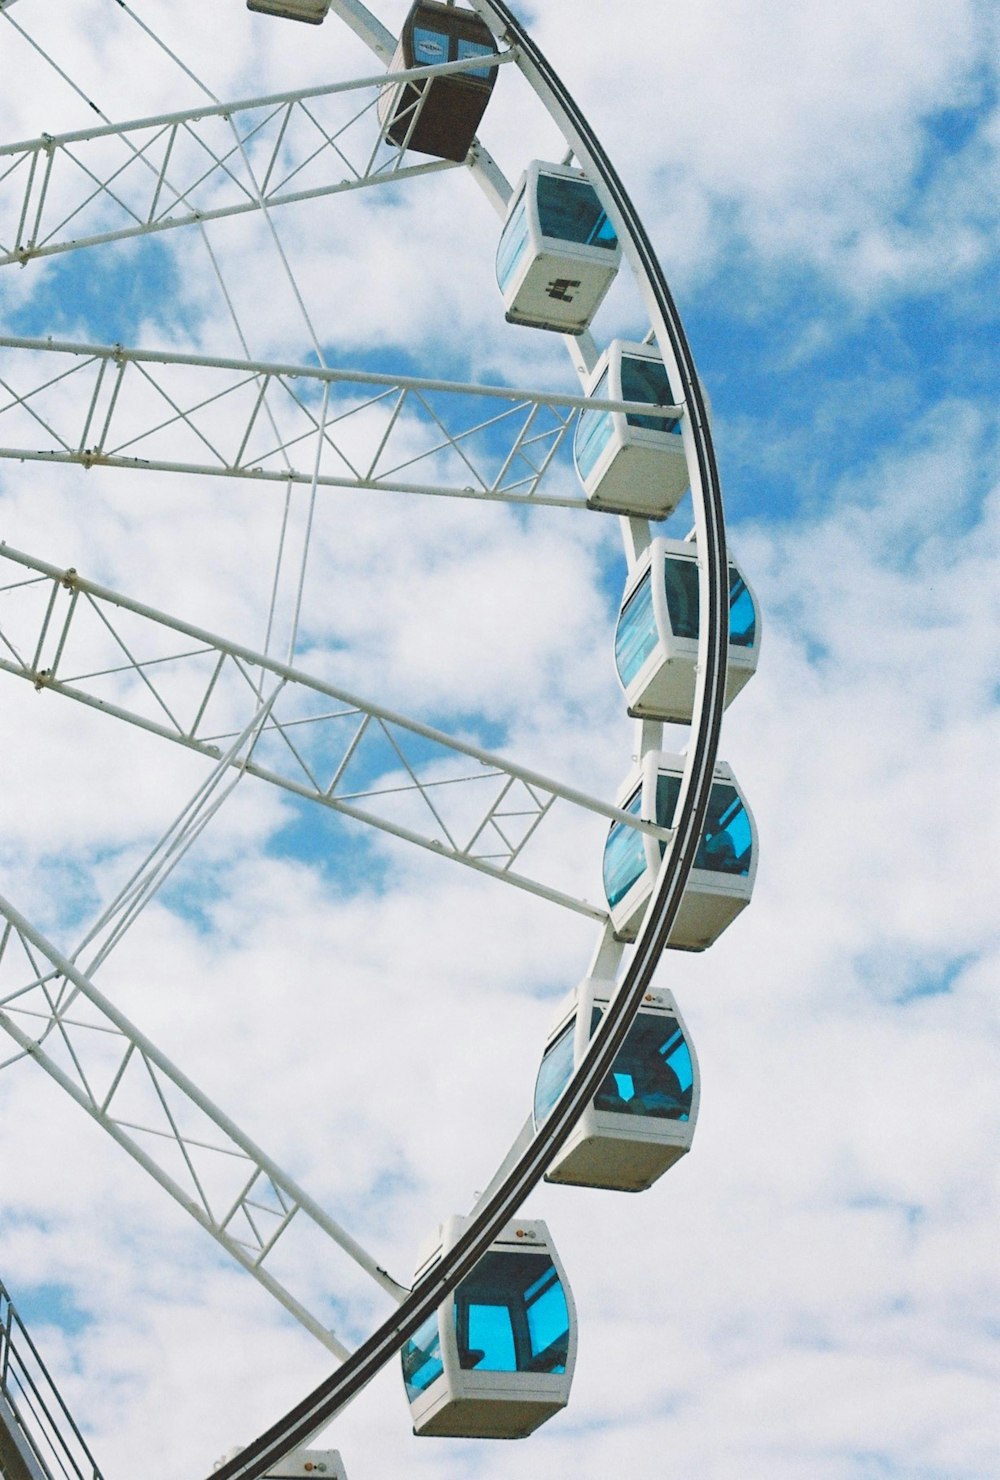 a ferris wheel is shown against a cloudy blue sky